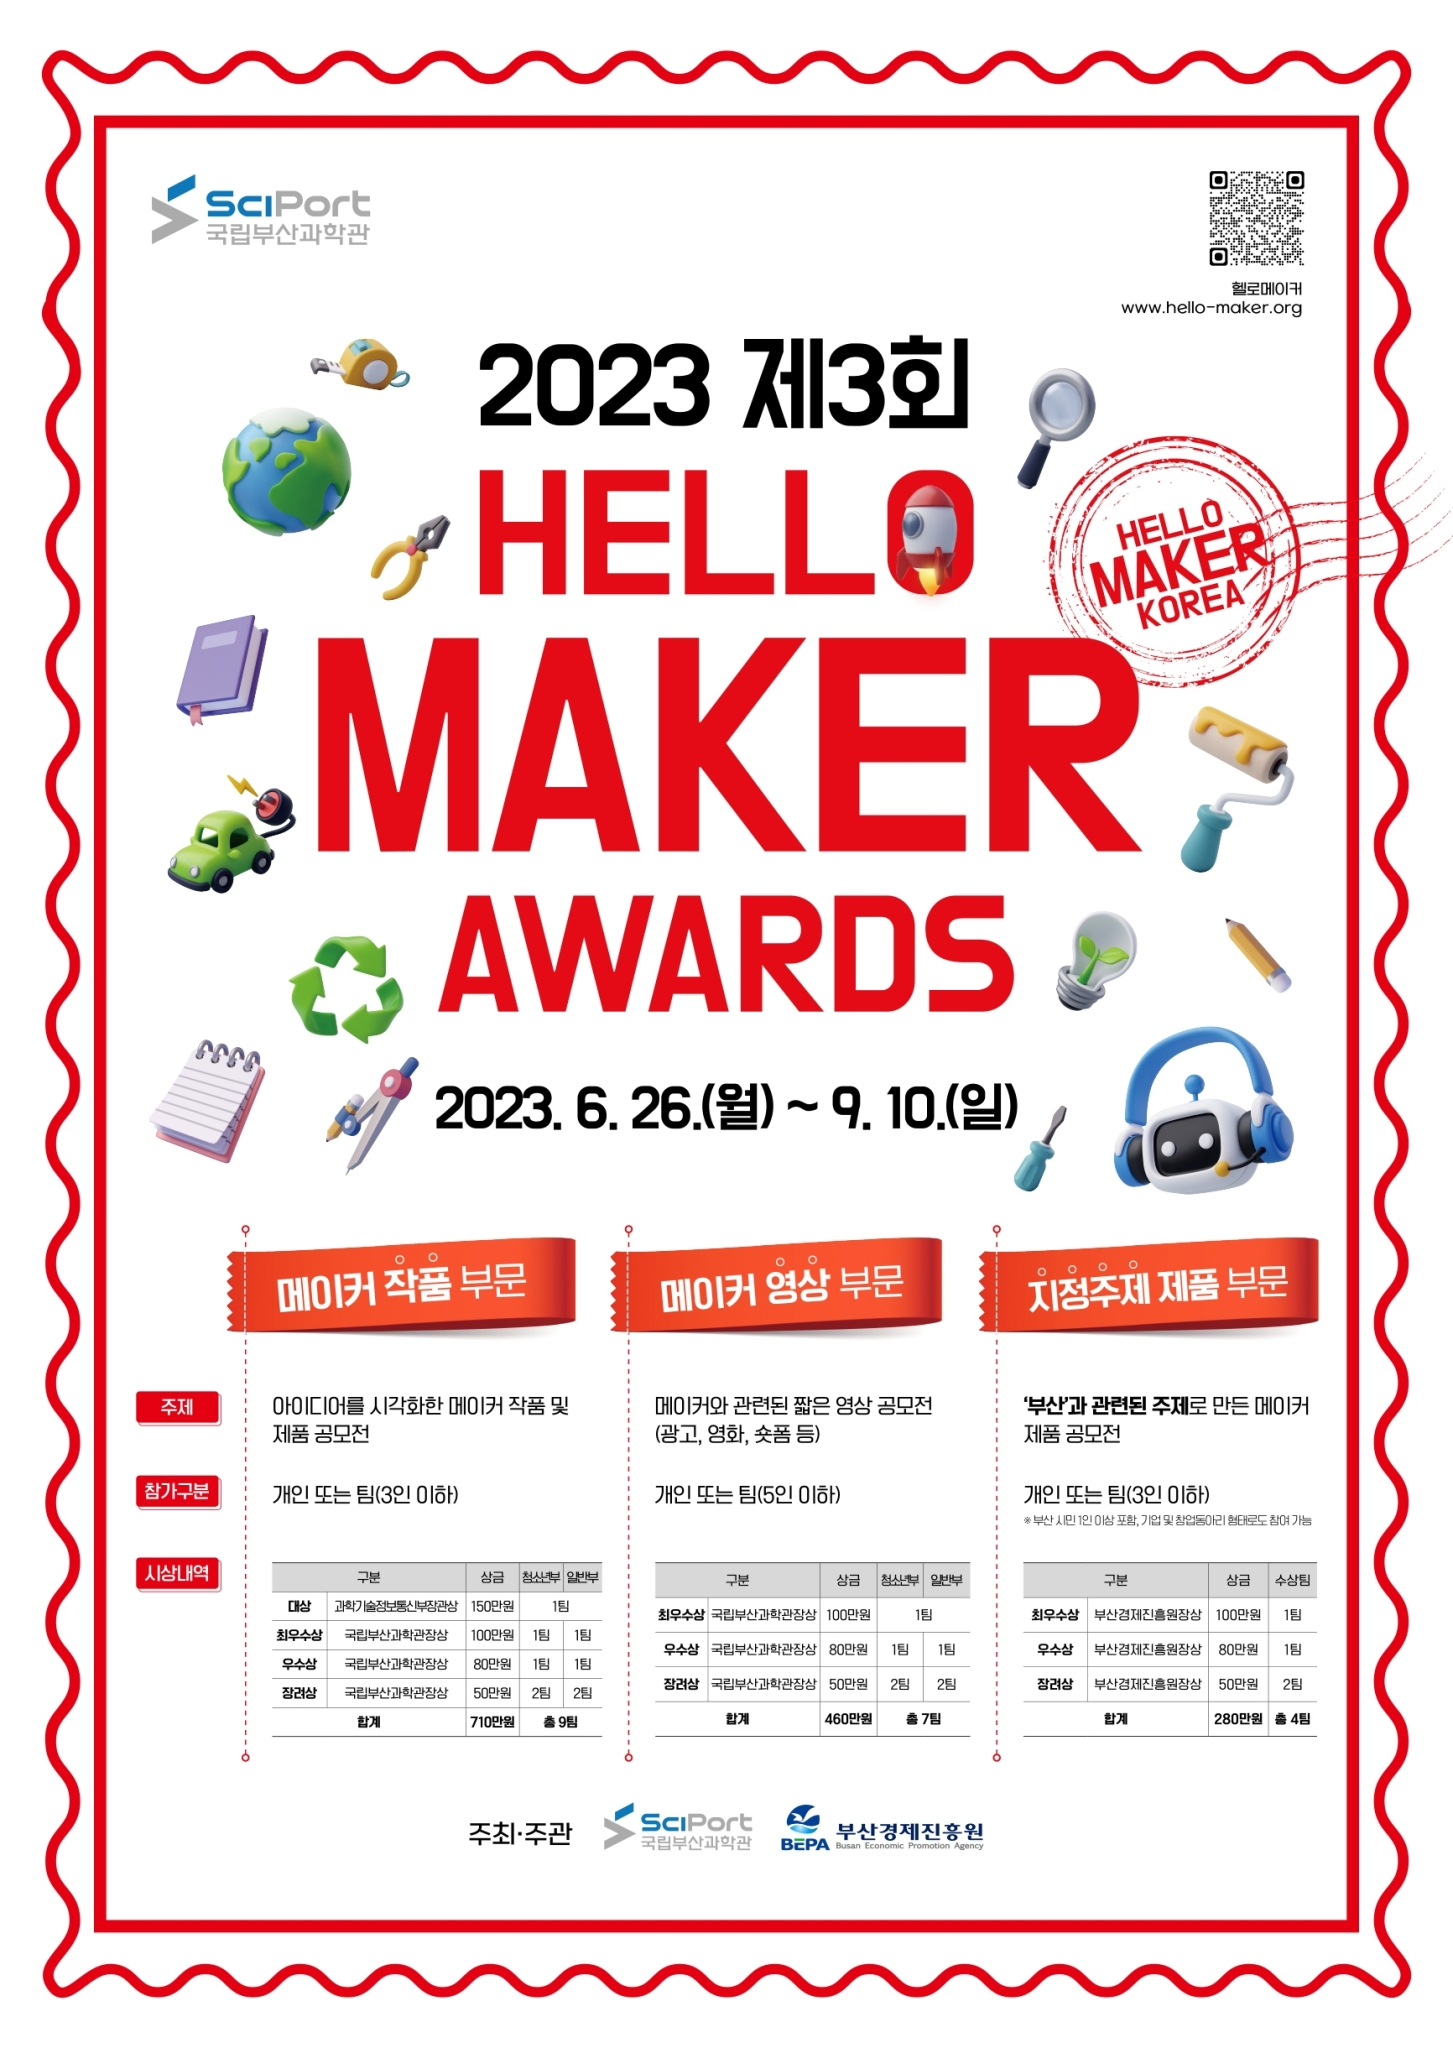 붙임1. 「2023 제3회 HELLO MAKER AWARDS」 공모전 포스터